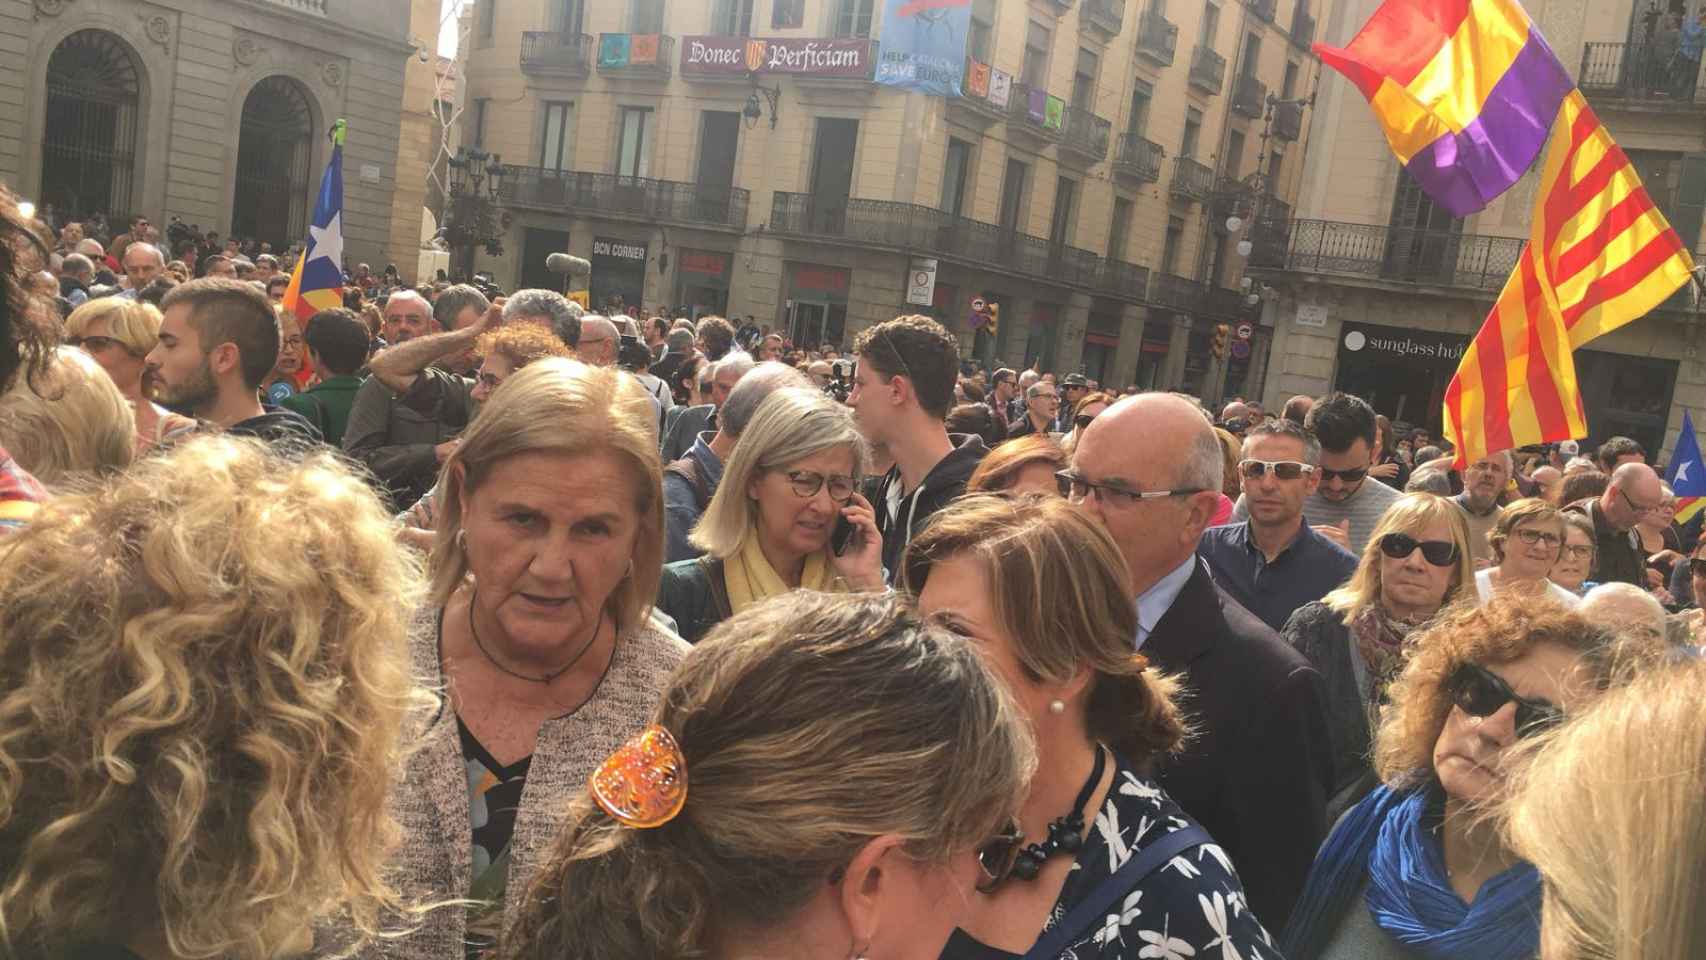 Núria de Gispert , expresidenta del Parlament, en la concentración en la Plaza Sant Jaume / AROA ORTEGA